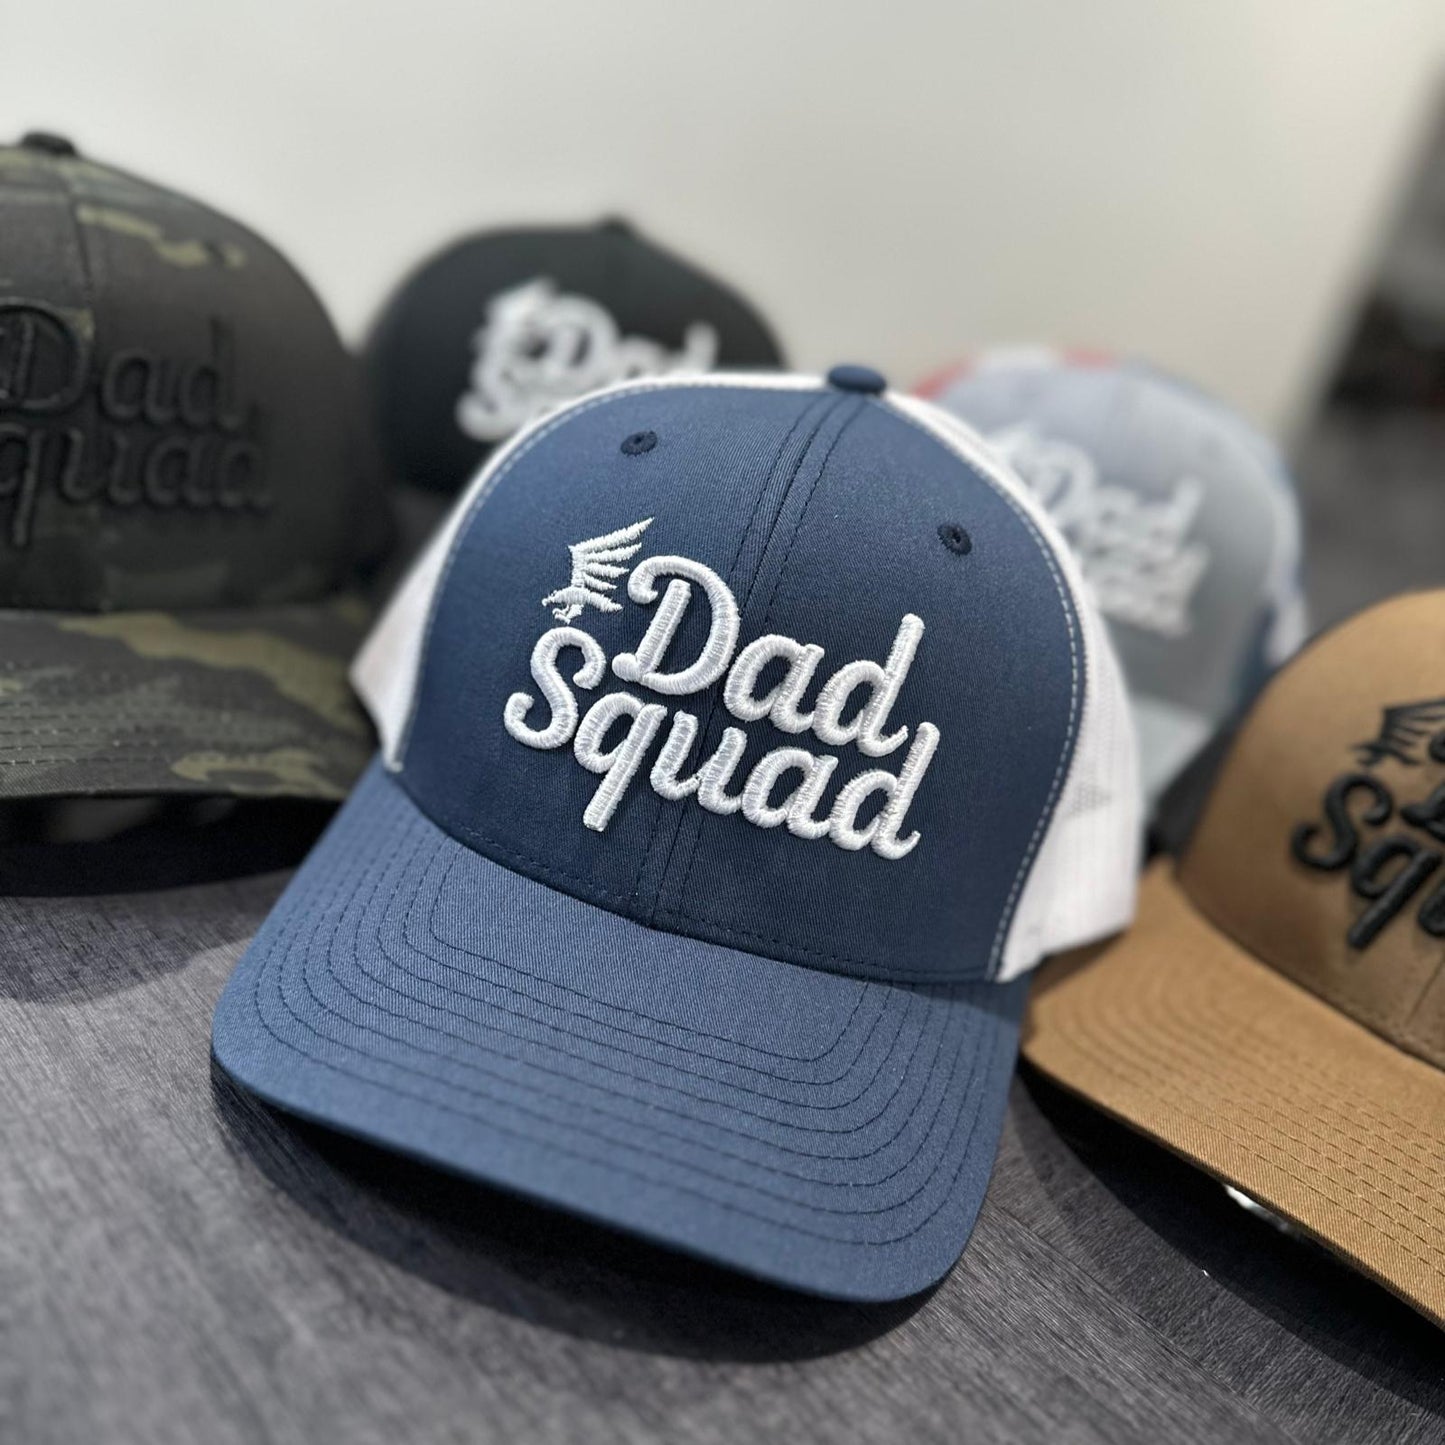 Dad Squad Trucker Hat - Navy/White